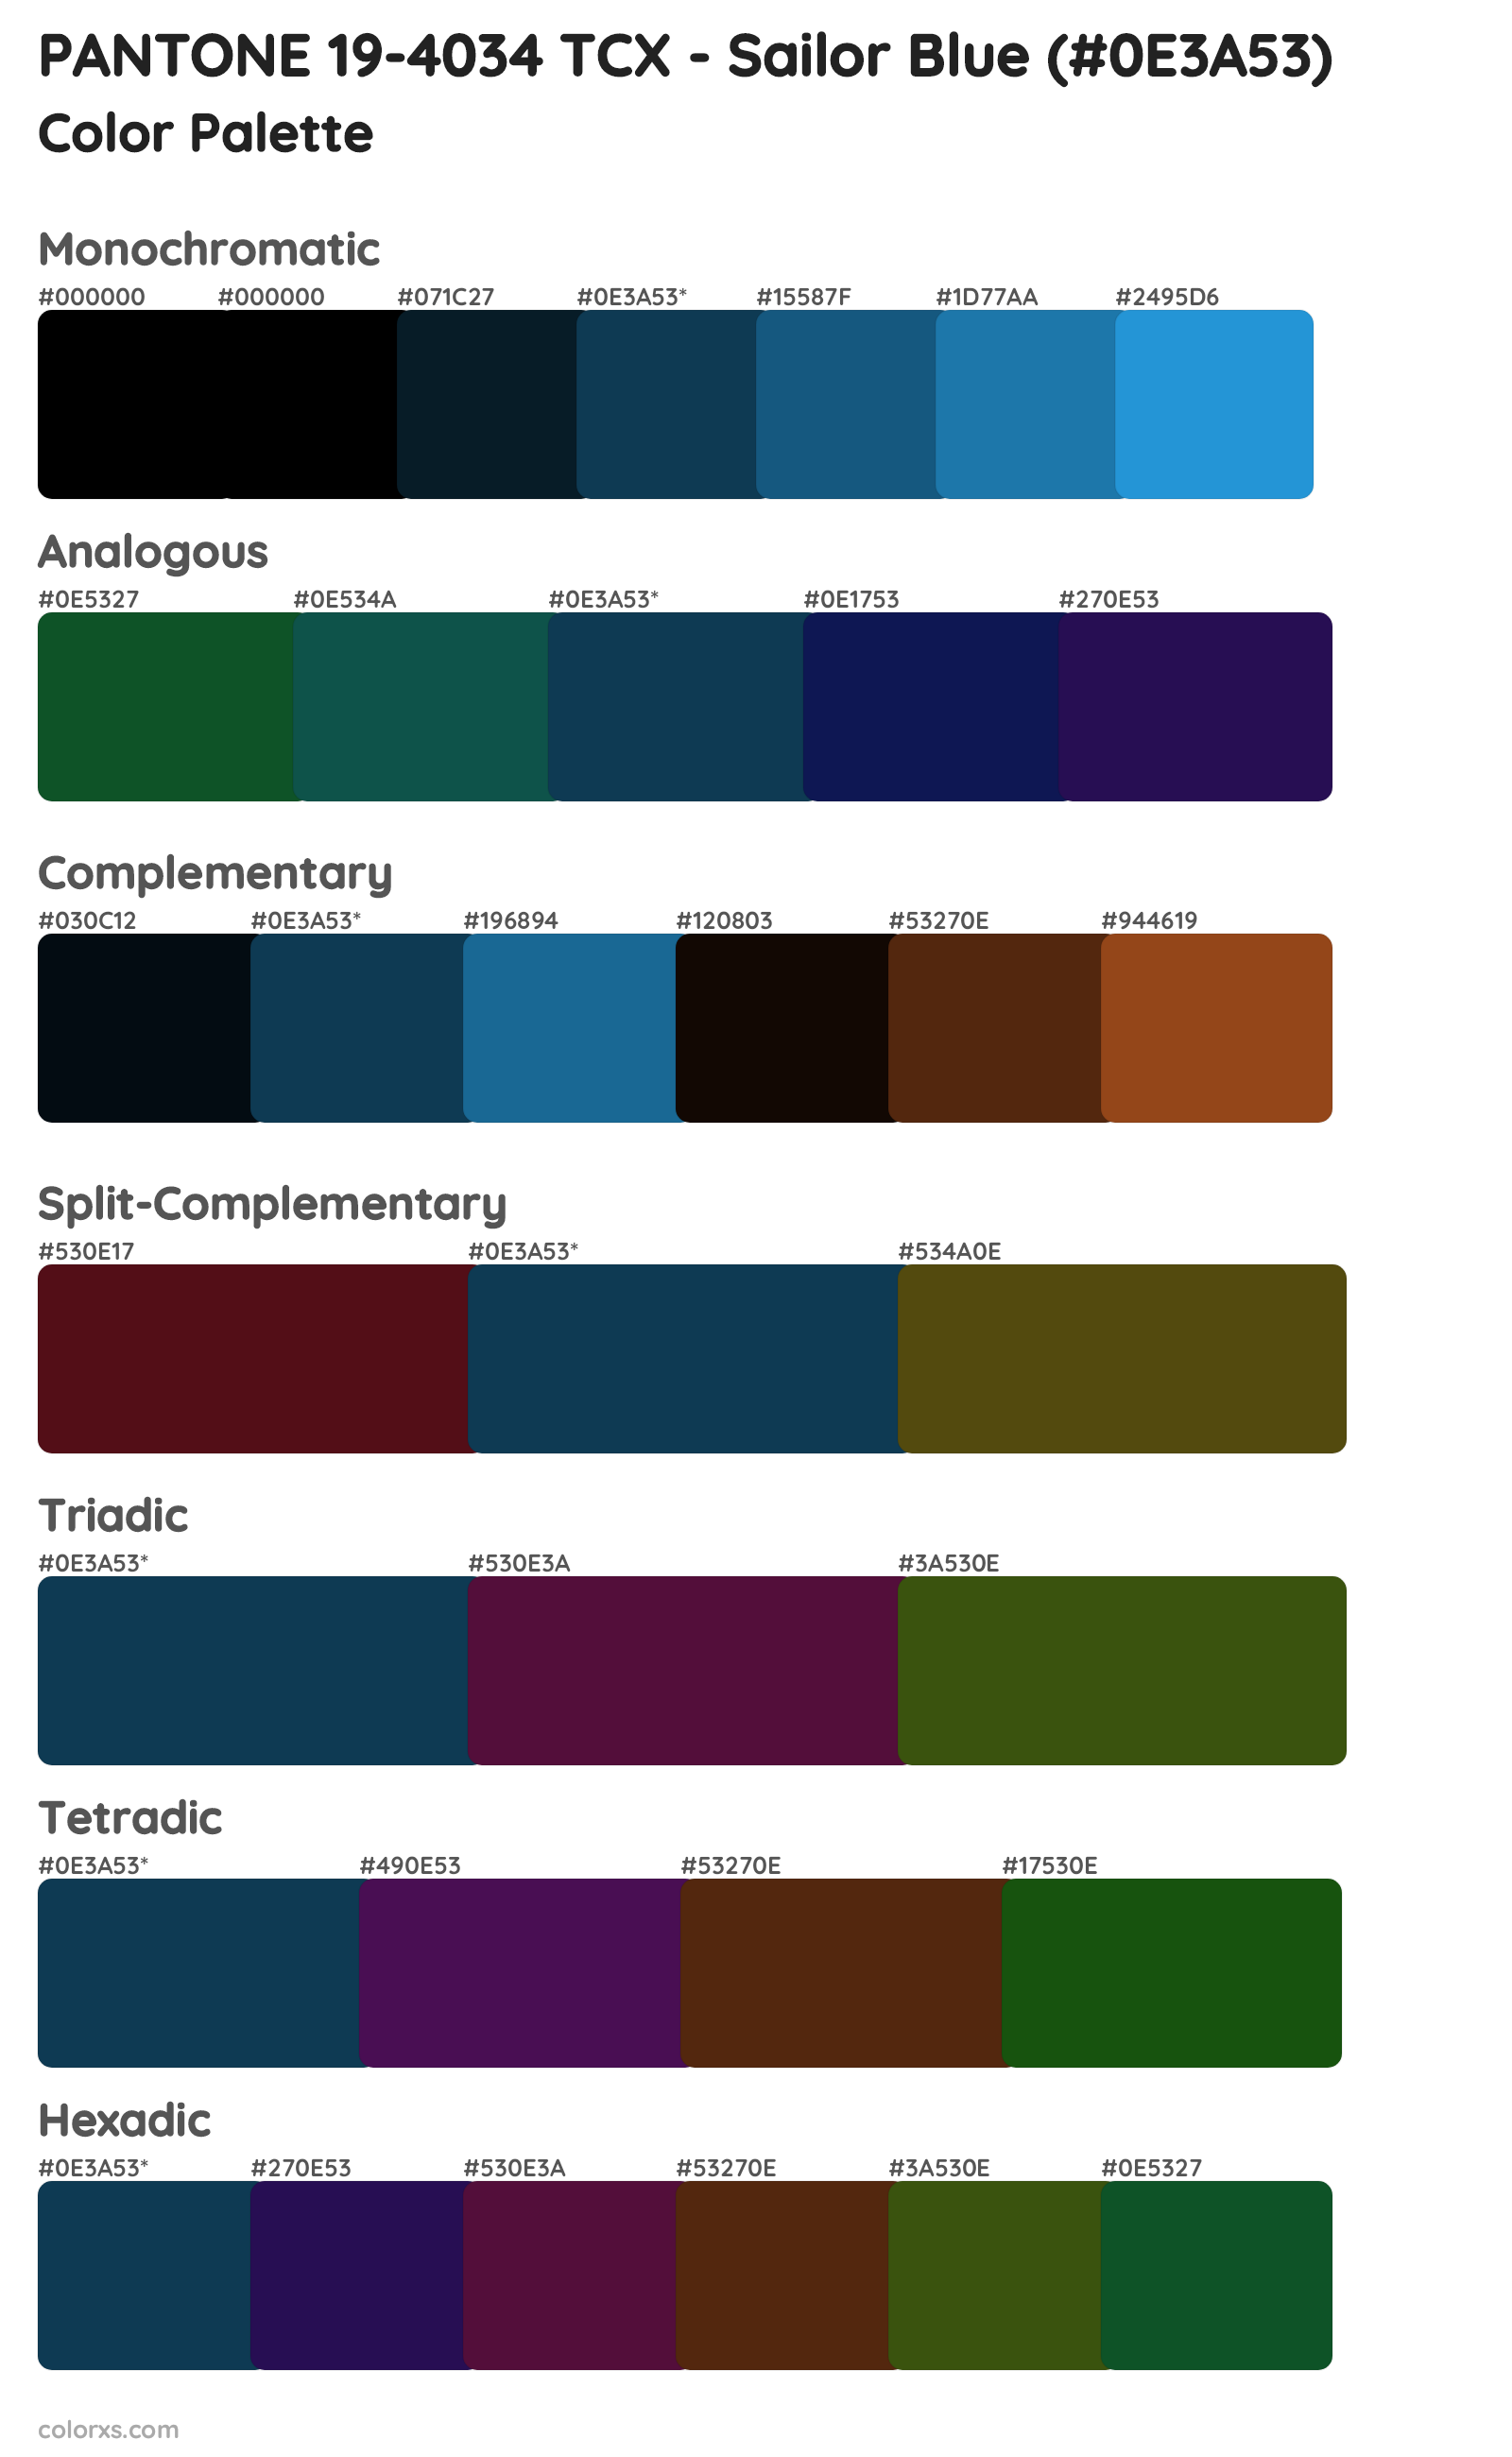 PANTONE 19-4034 TCX - Sailor Blue Color Scheme Palettes